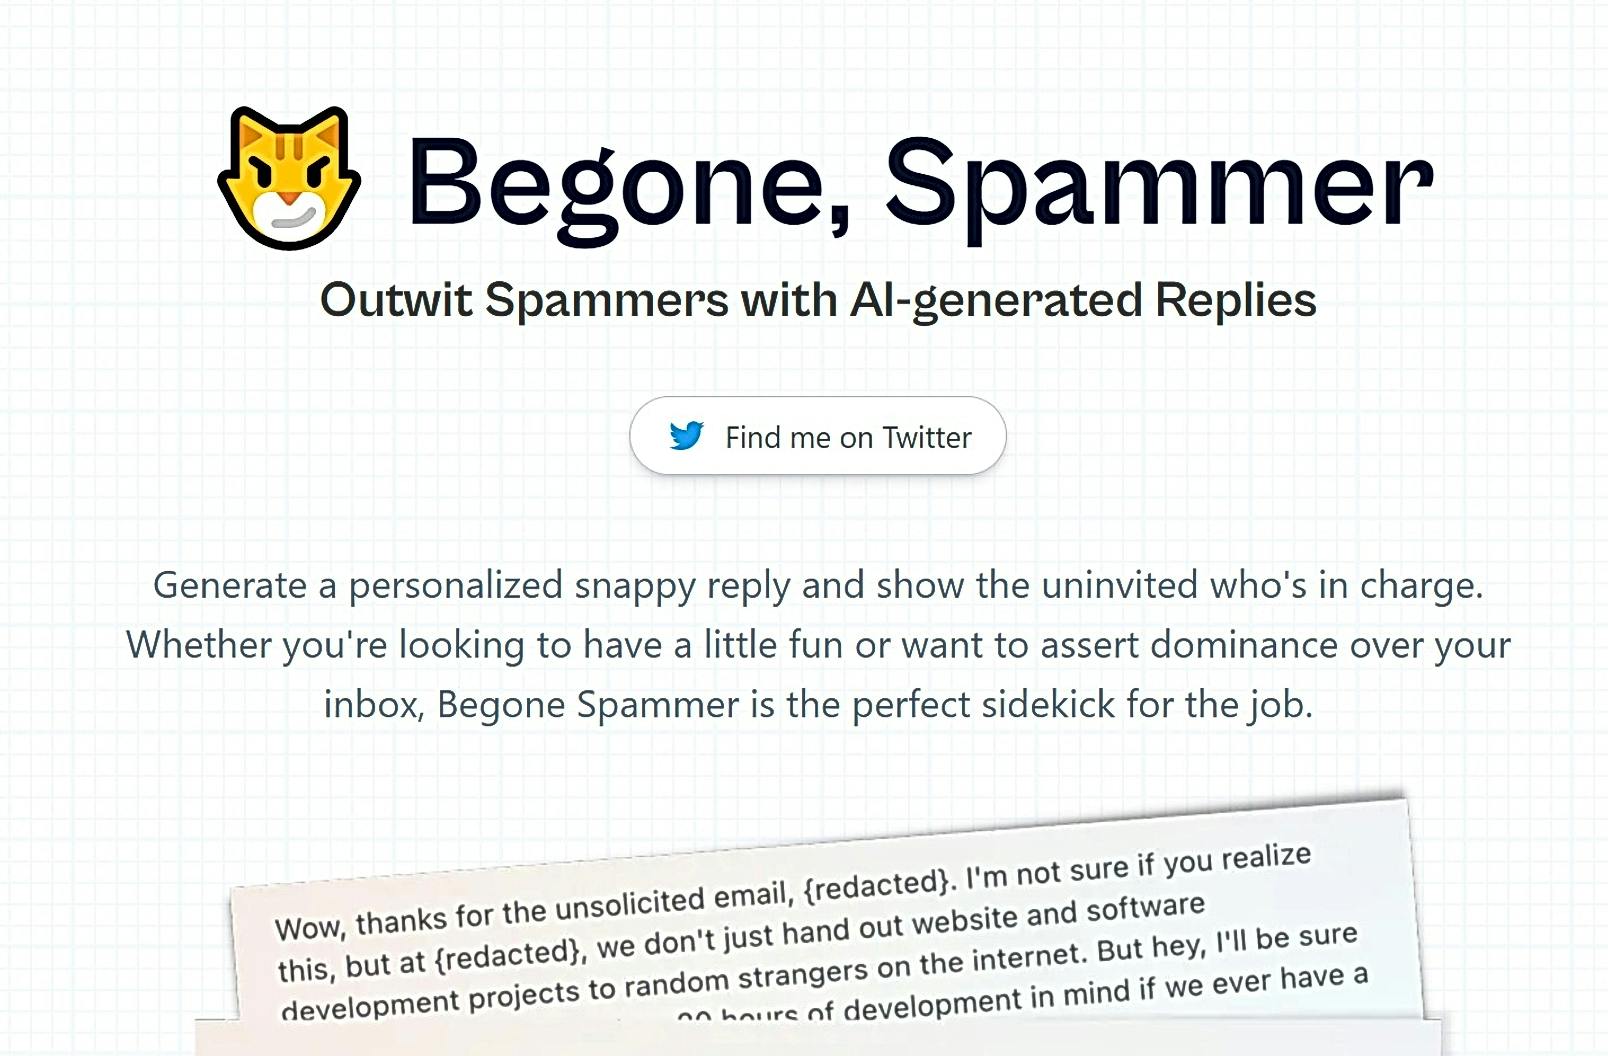 Begone Spammer featured